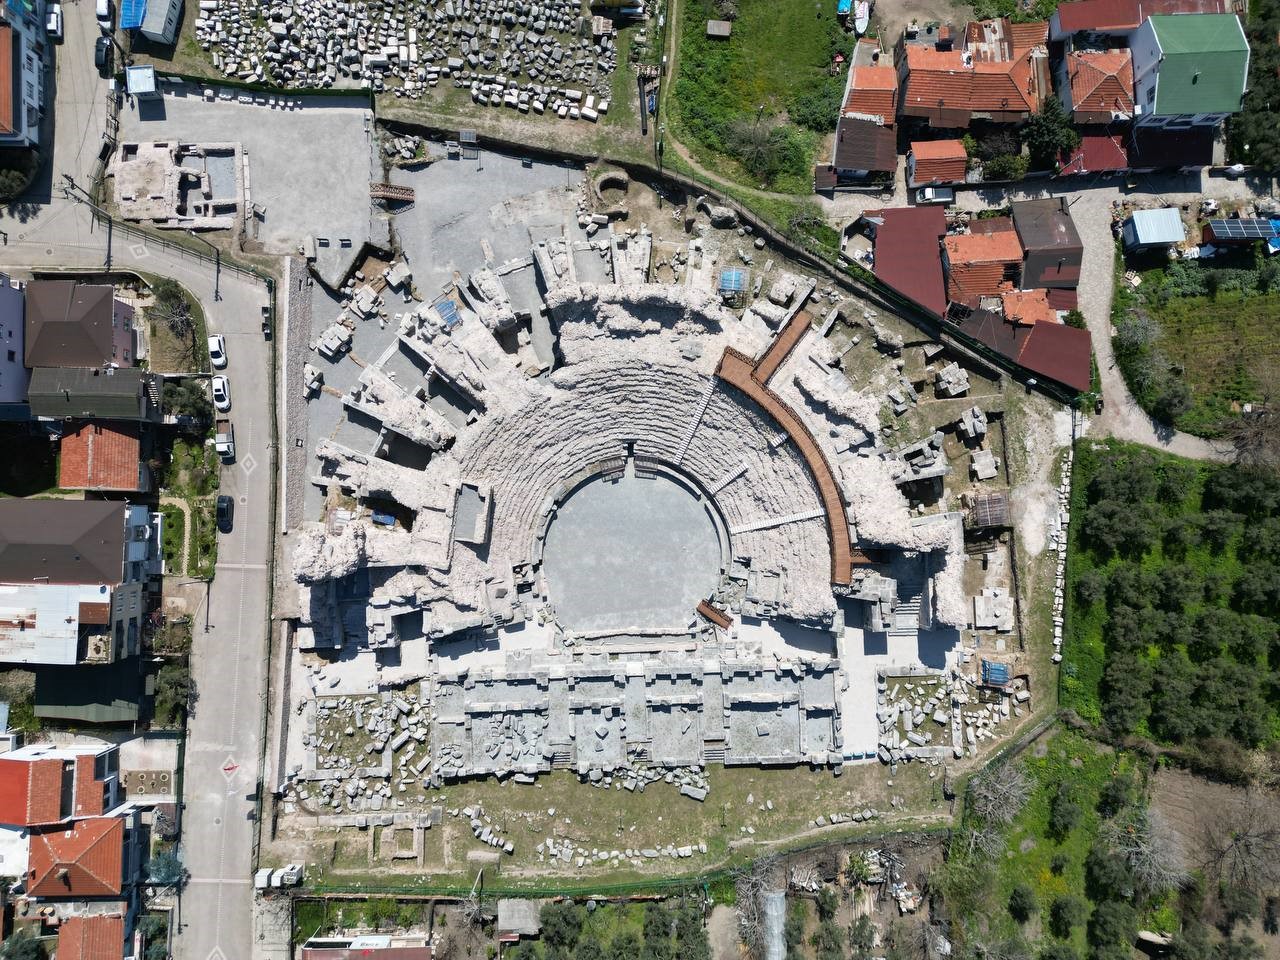 1800 yillik iznik roma tiyatrosu turizme kazandirildi 0 MMF2KmfO